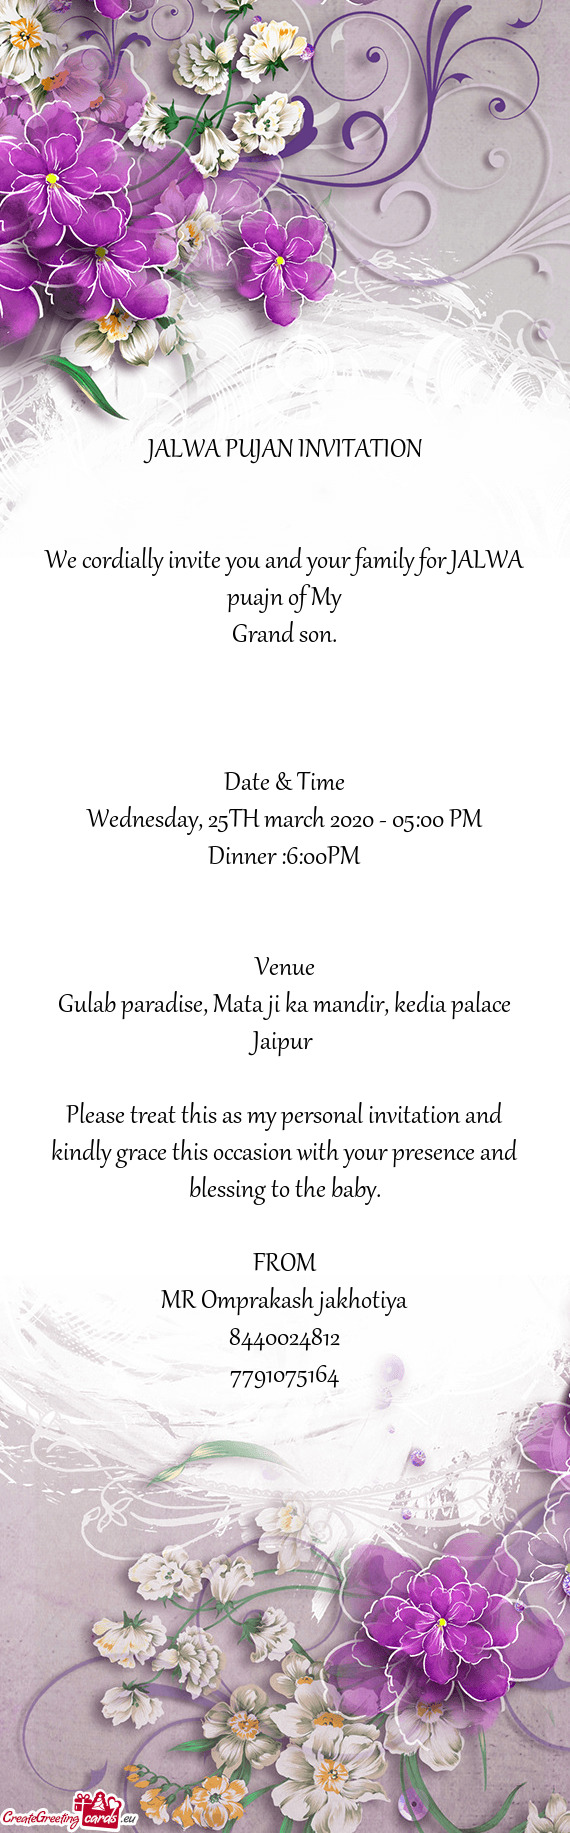 JALWA PUJAN INVITATION